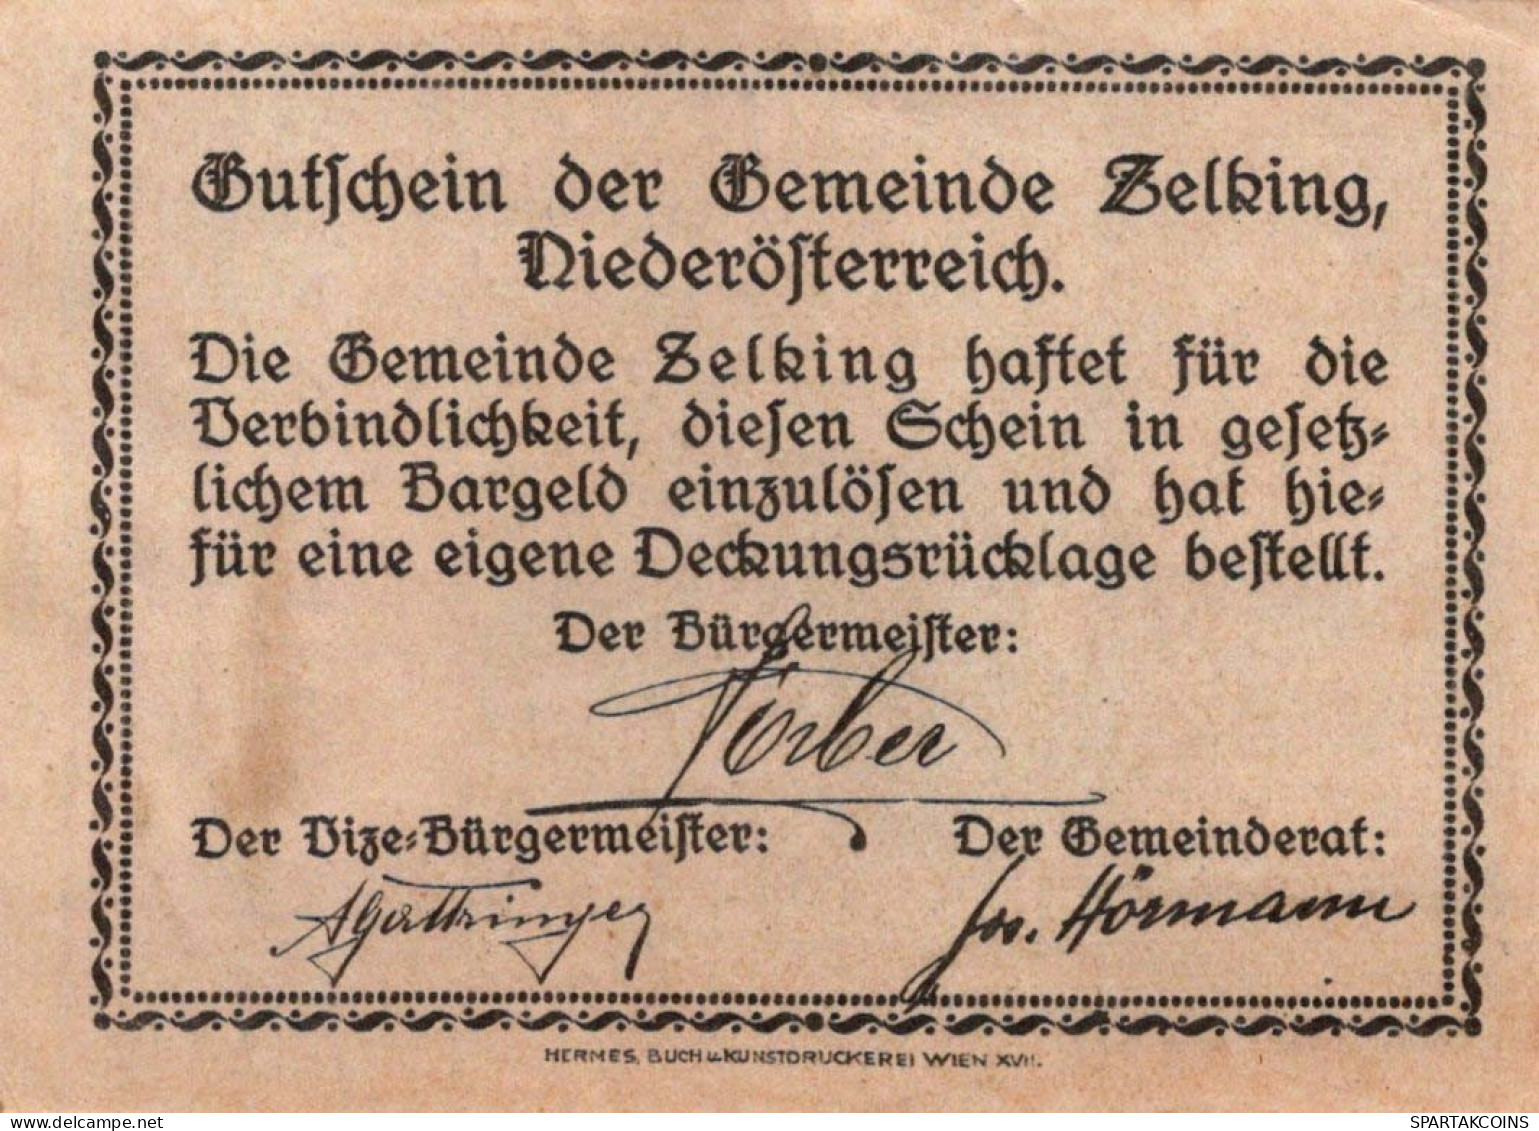 20 HELLER 1920 Stadt ZELL AM SEE Salzburg Österreich Notgeld Banknote #PE099 - Lokale Ausgaben